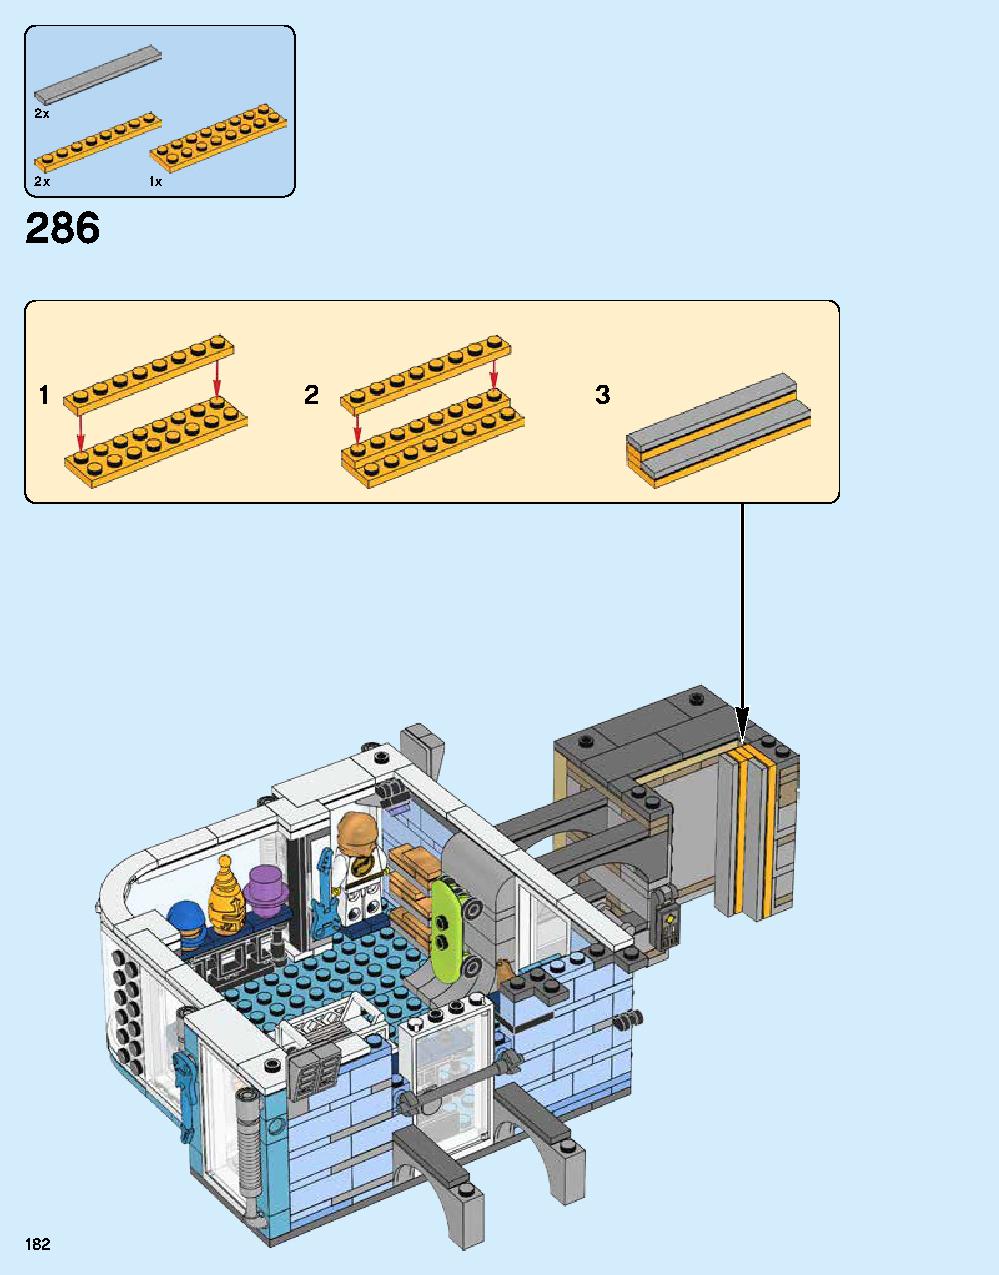 ニンジャゴー シティ 70620 レゴの商品情報 レゴの説明書・組立方法 182 page